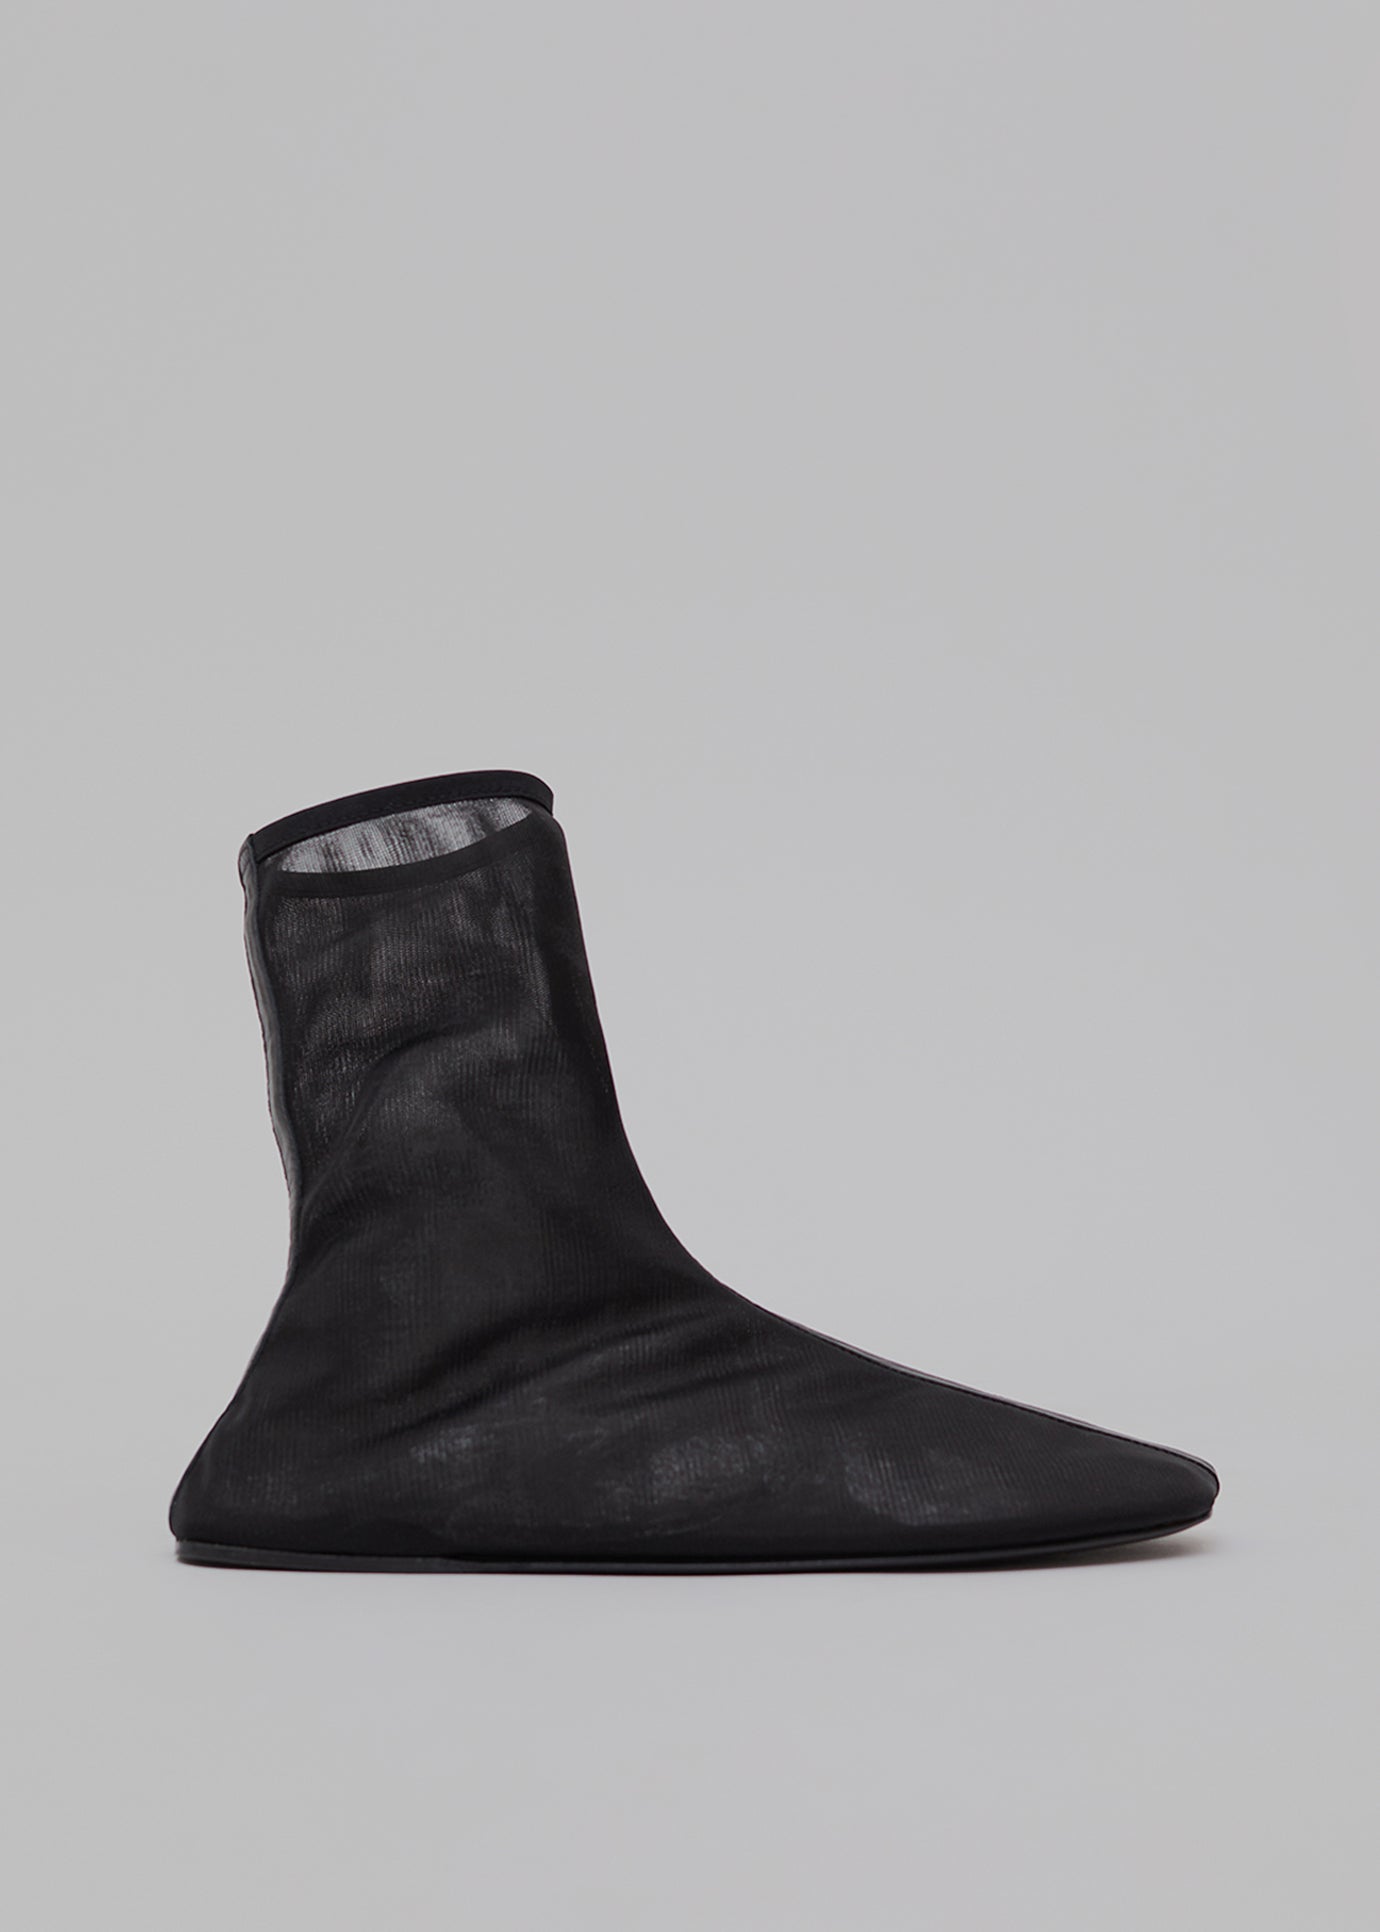 Christopher Esber Benson Ankle Boots - Black